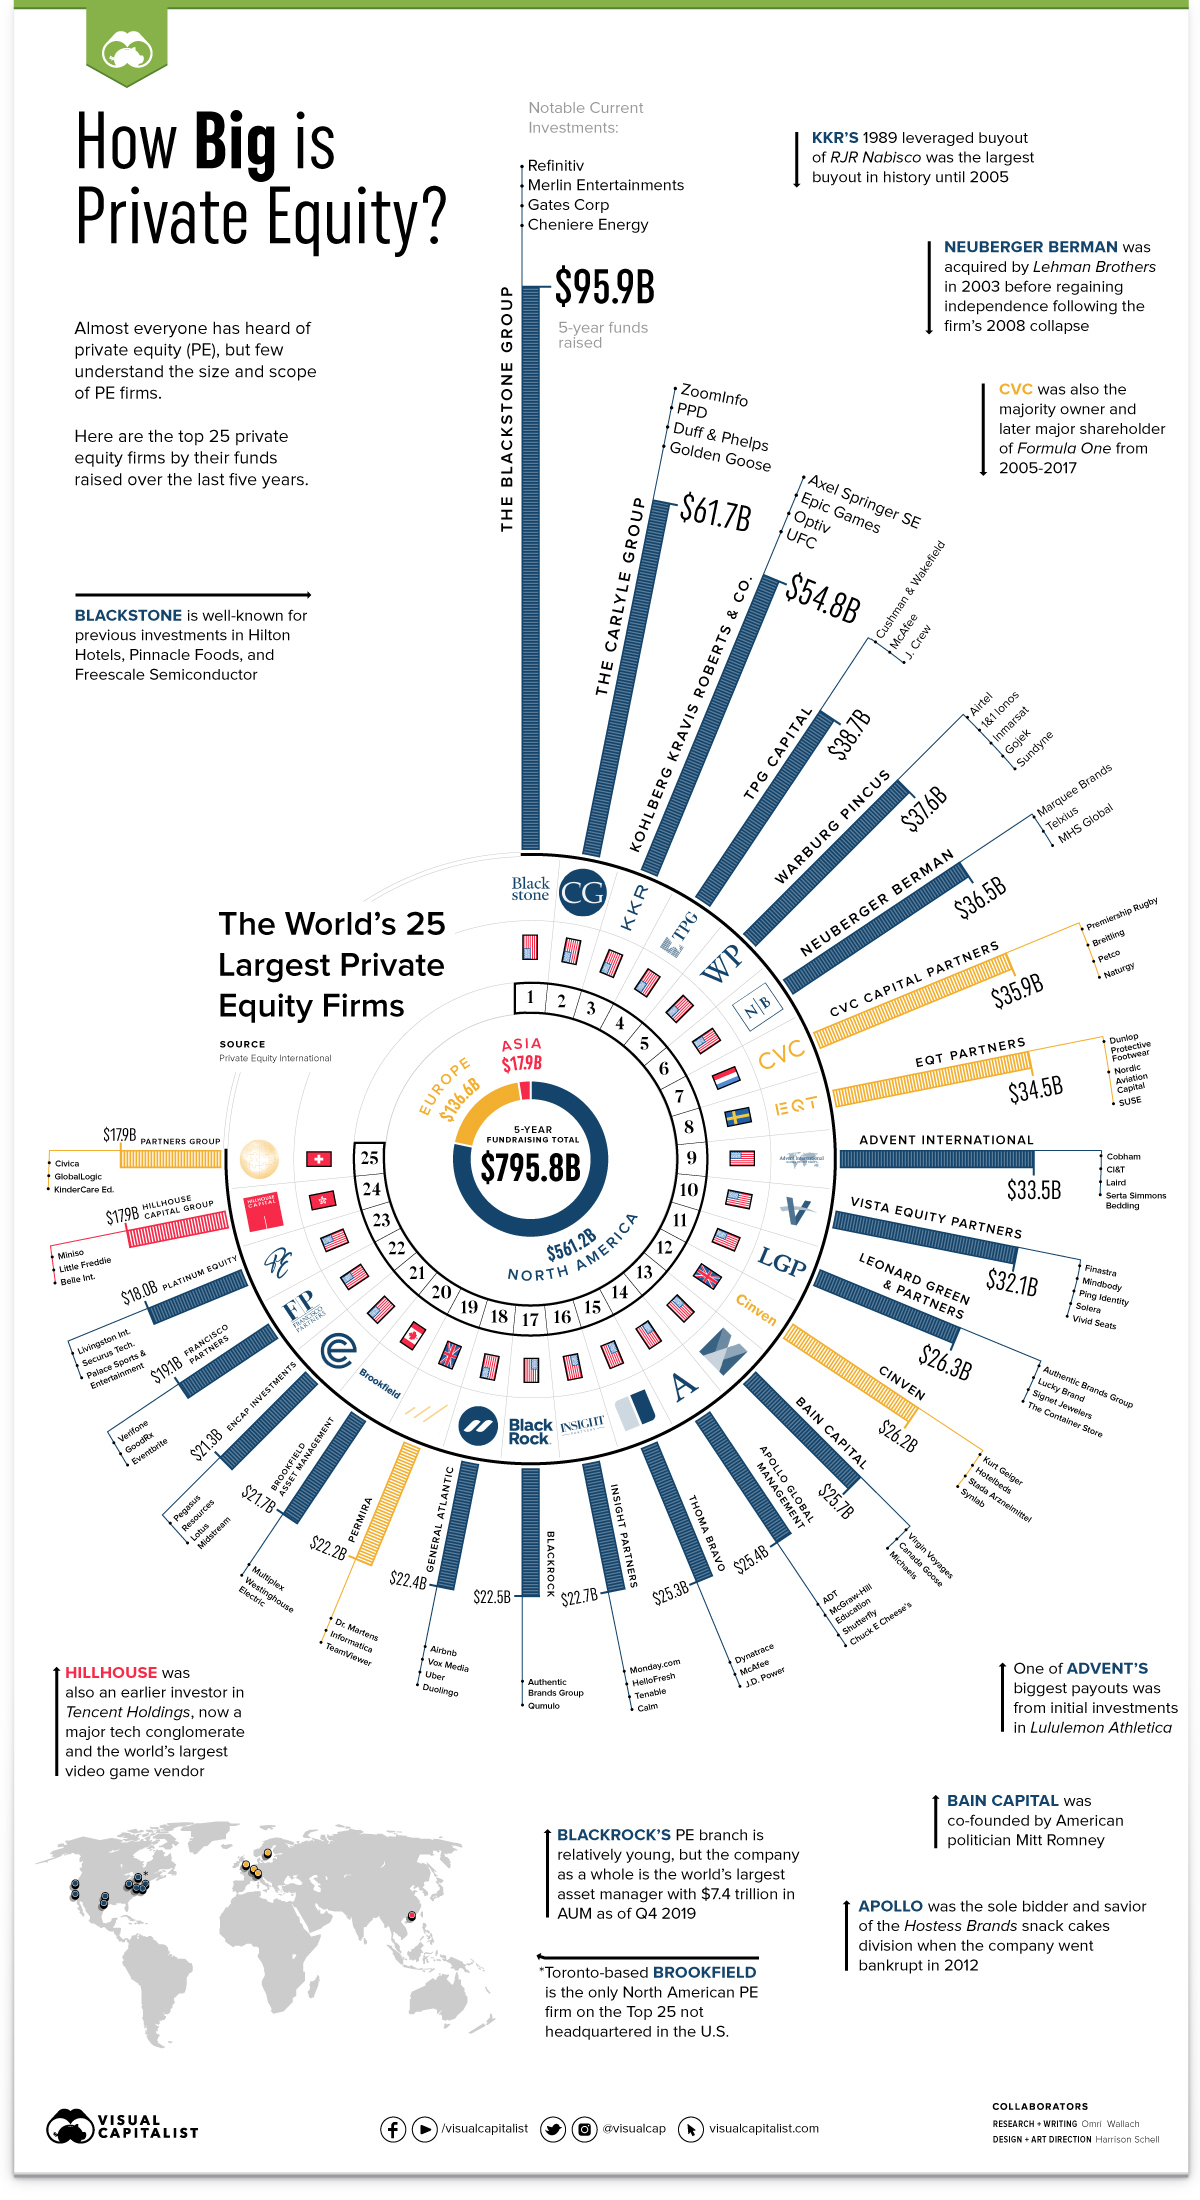 25 بزرگترین شرکت سهامی خاص در جهان